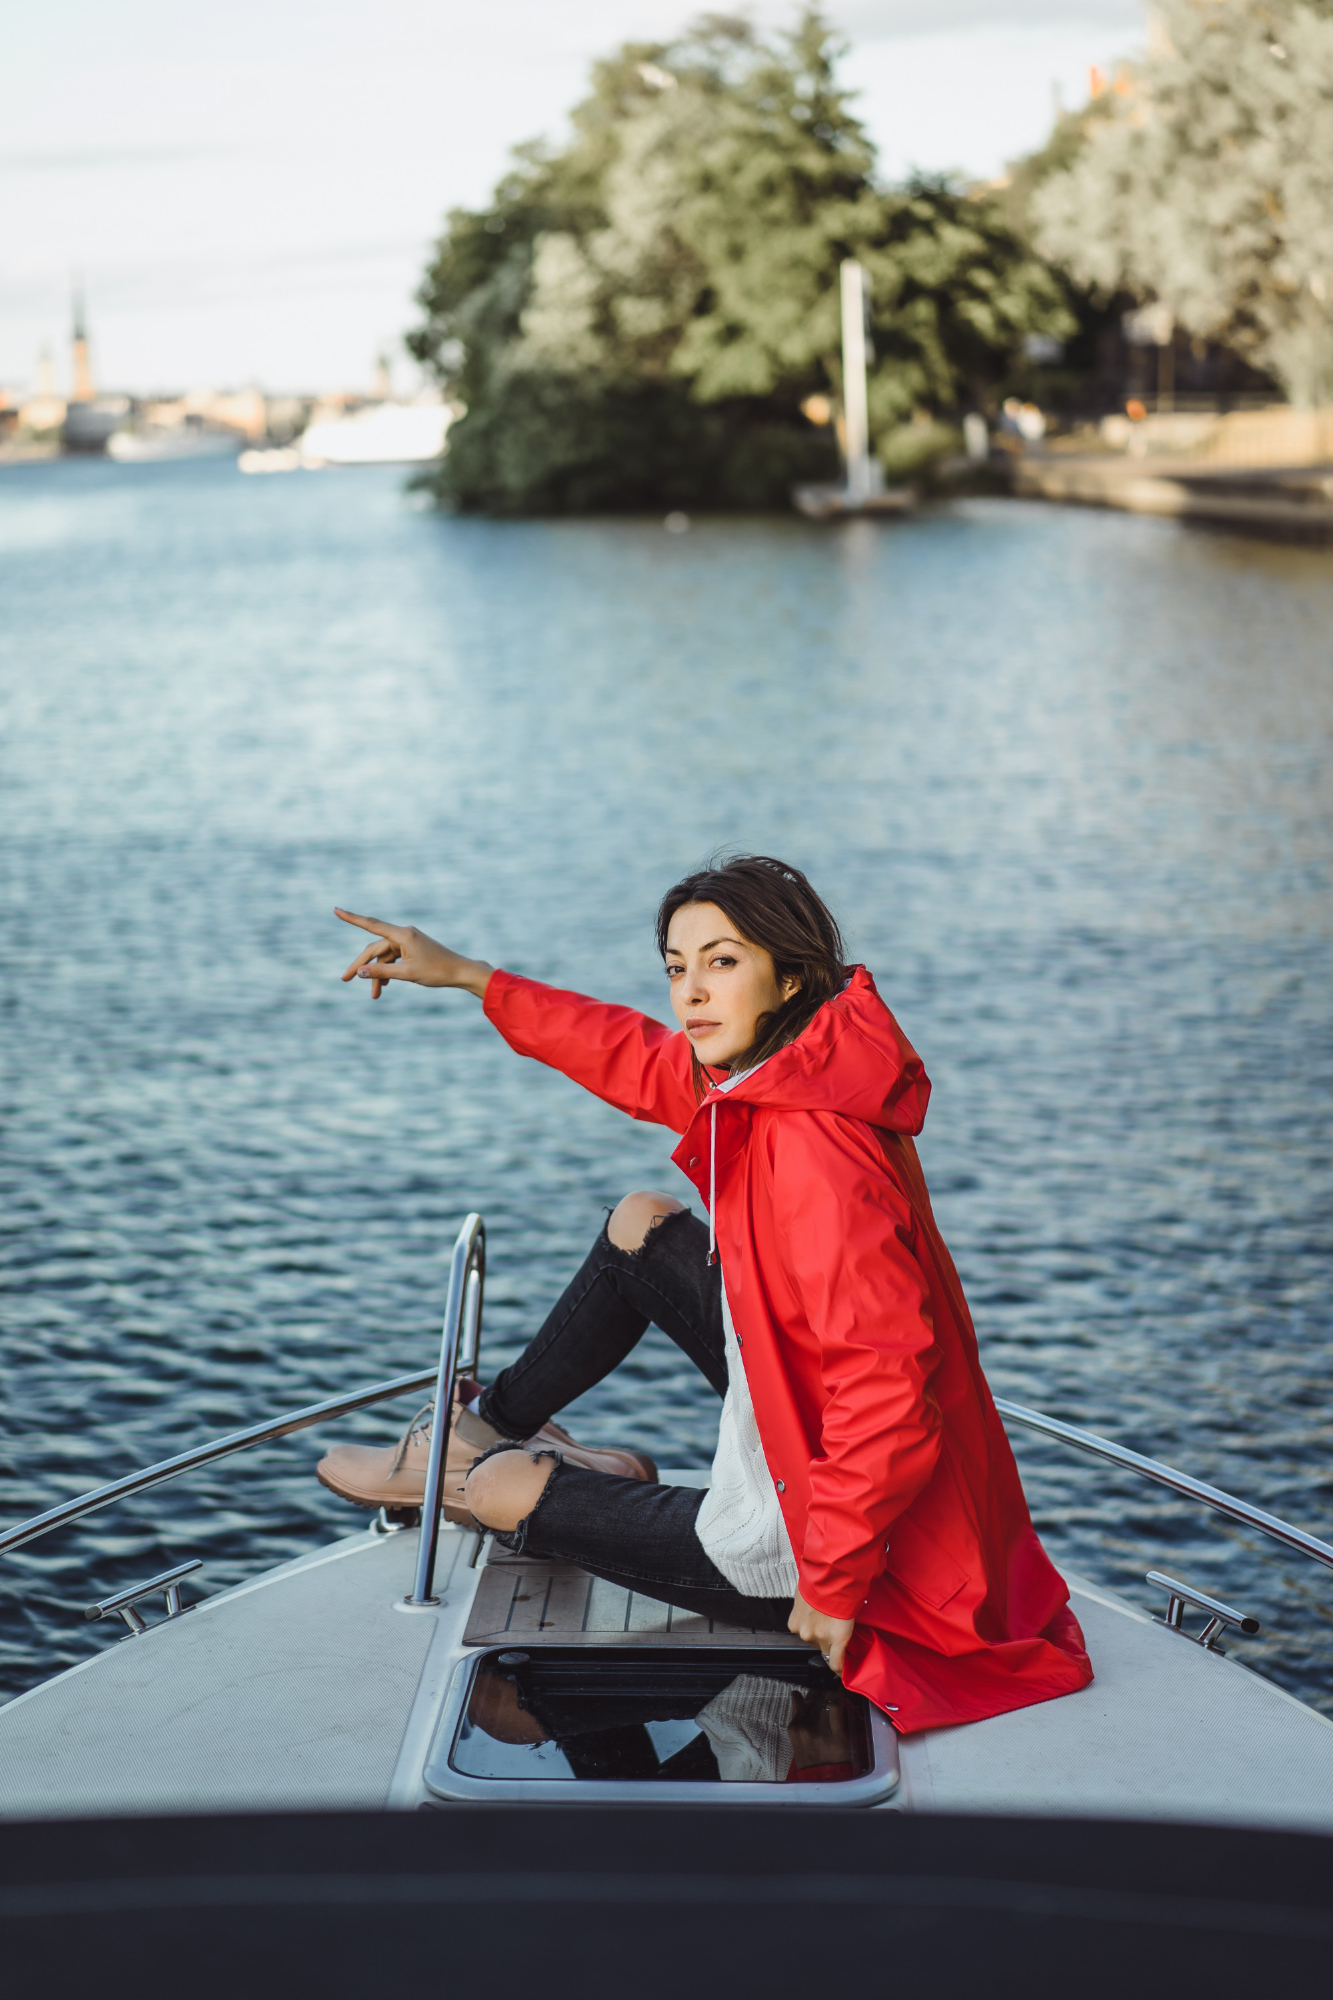 Eine Frau, die ihre Hand über Bord eines Bootes streckt | Quelle: Freepik